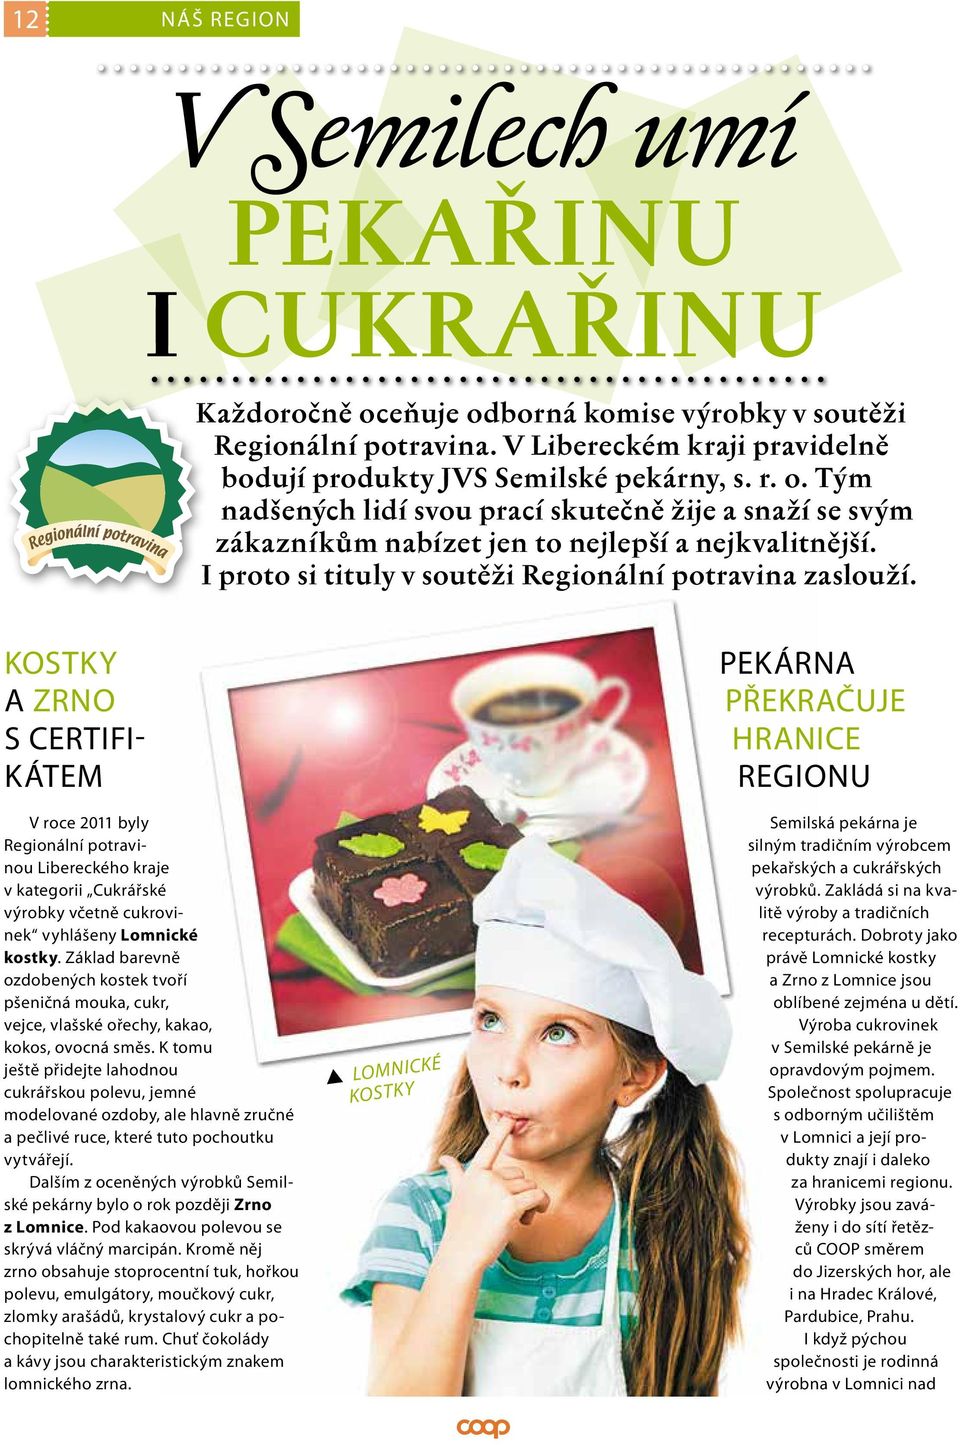 KOSTKY A ZRNO S CERTIFI- KÁTEM V roce 2011 byly Regionální potravinou Libereckého kraje v kategorii Cukrářské výrobky včetně cukrovinek vyhlášeny Lomnické kostky.